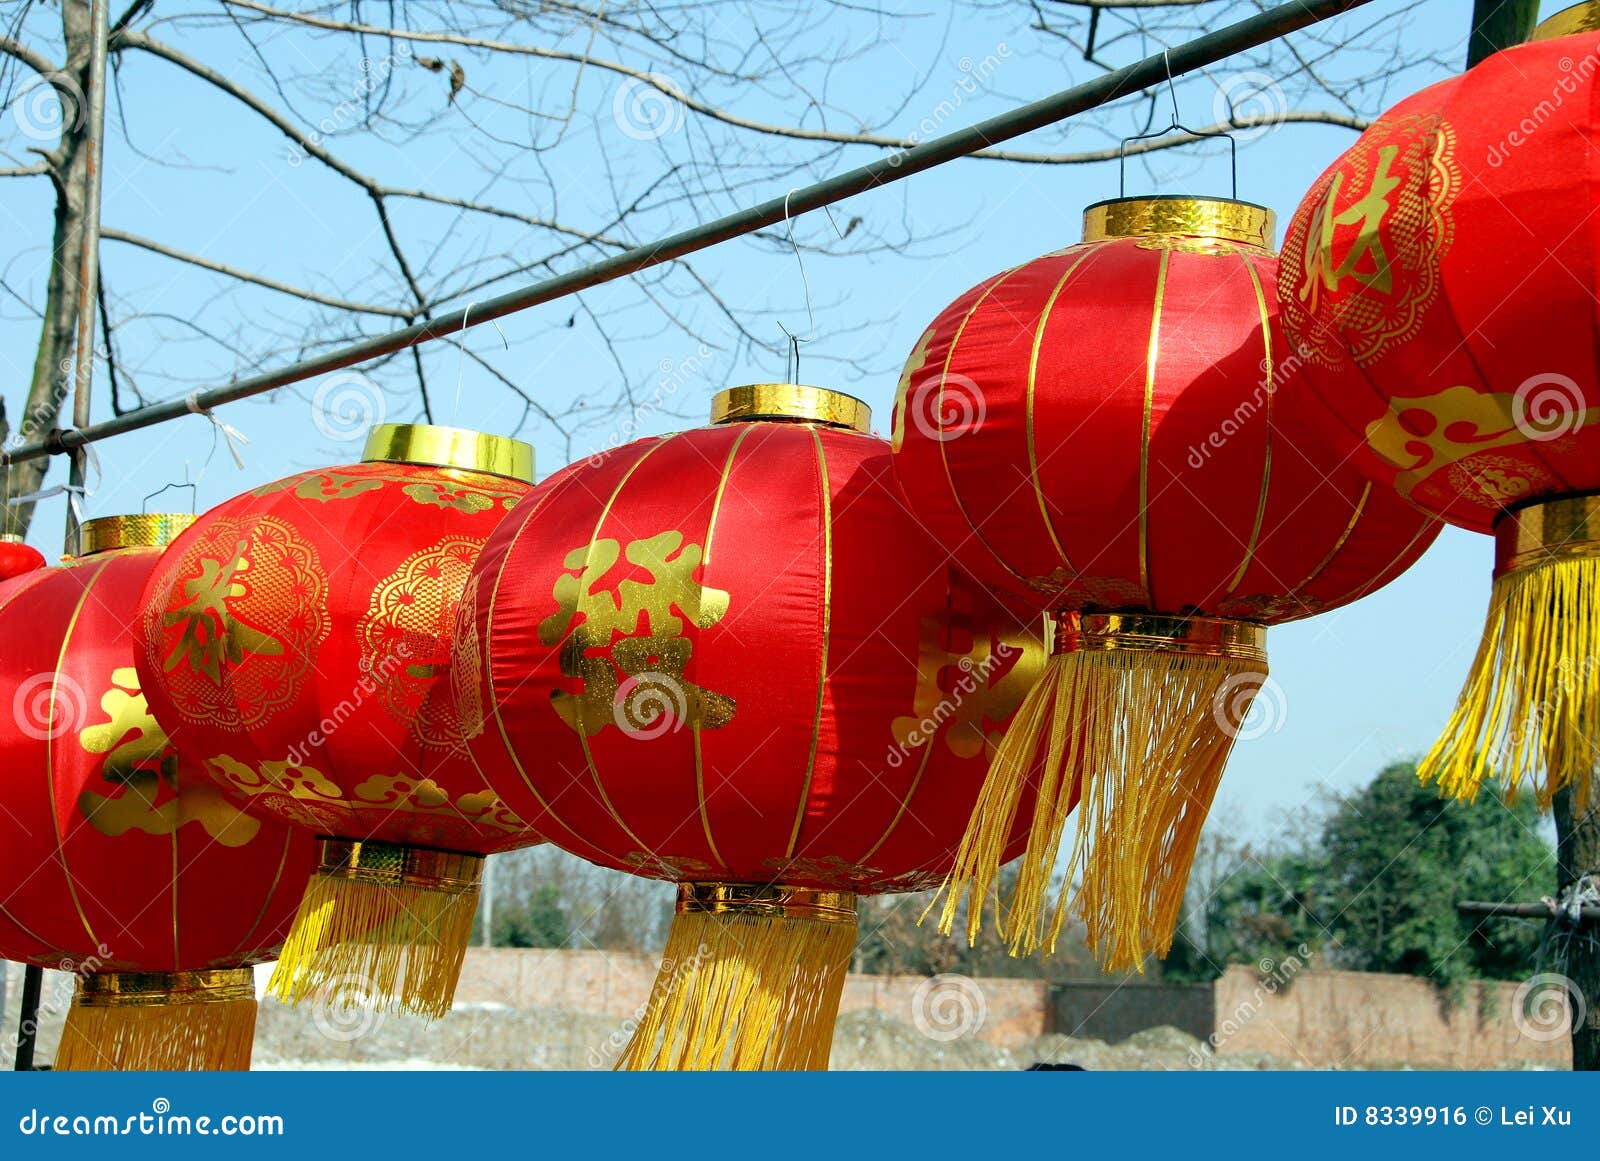 pengzhou, china: lunar new year lanterns